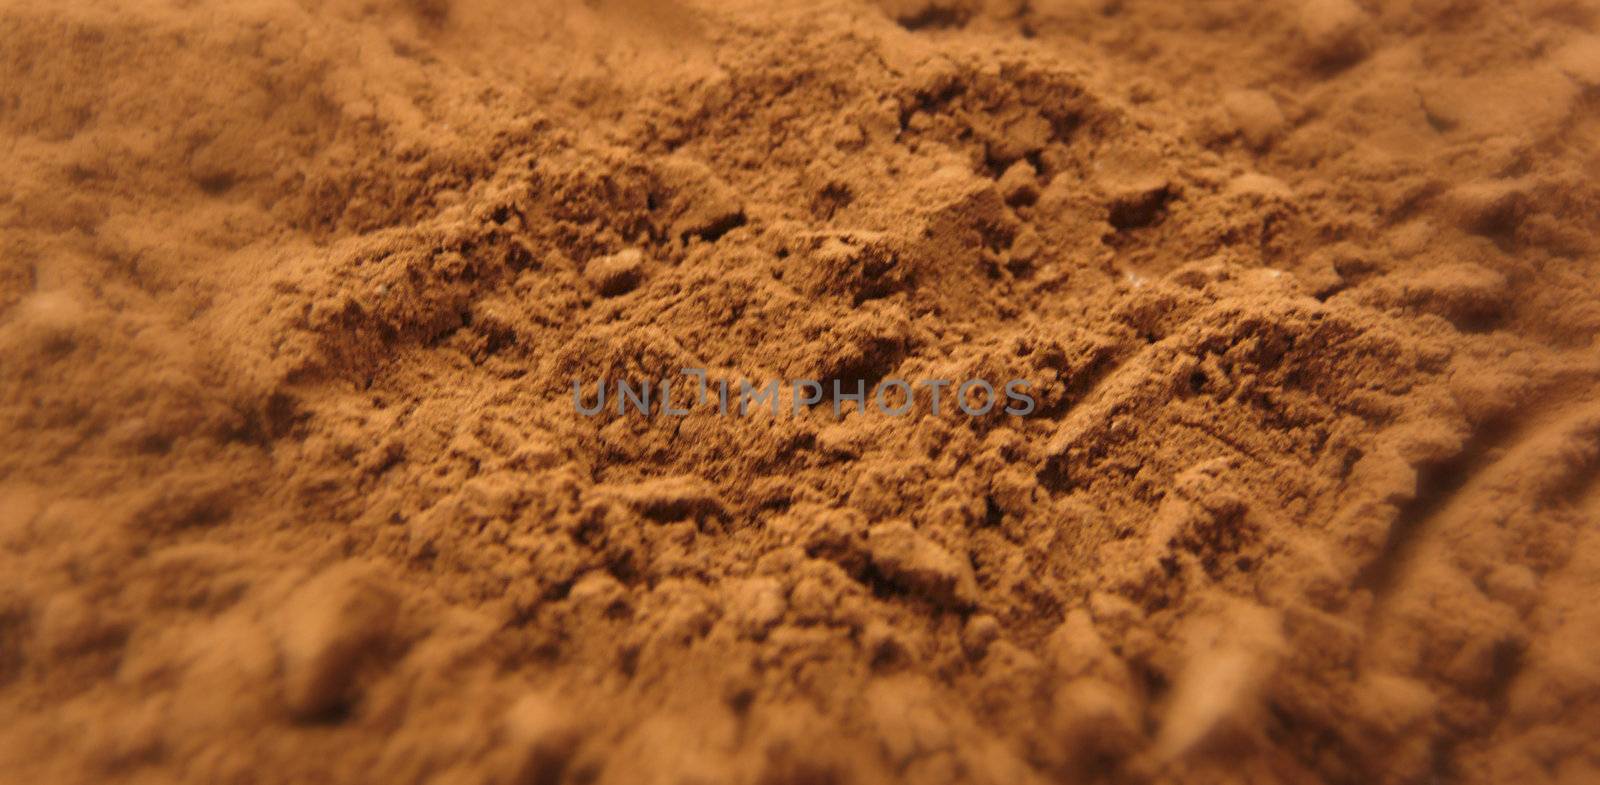 Cocoa powder background